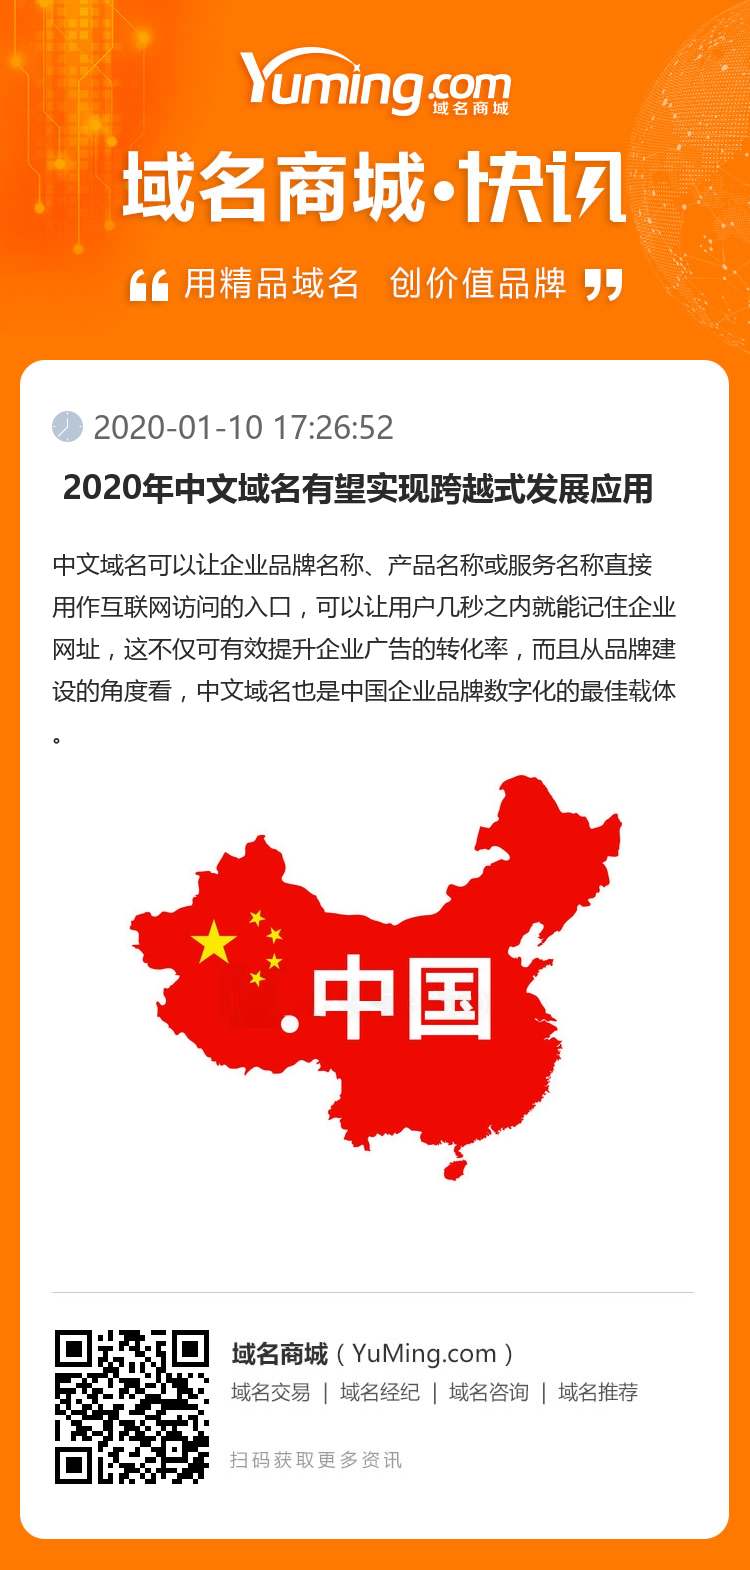  2020年中文域名有望实现跨越式发展应用